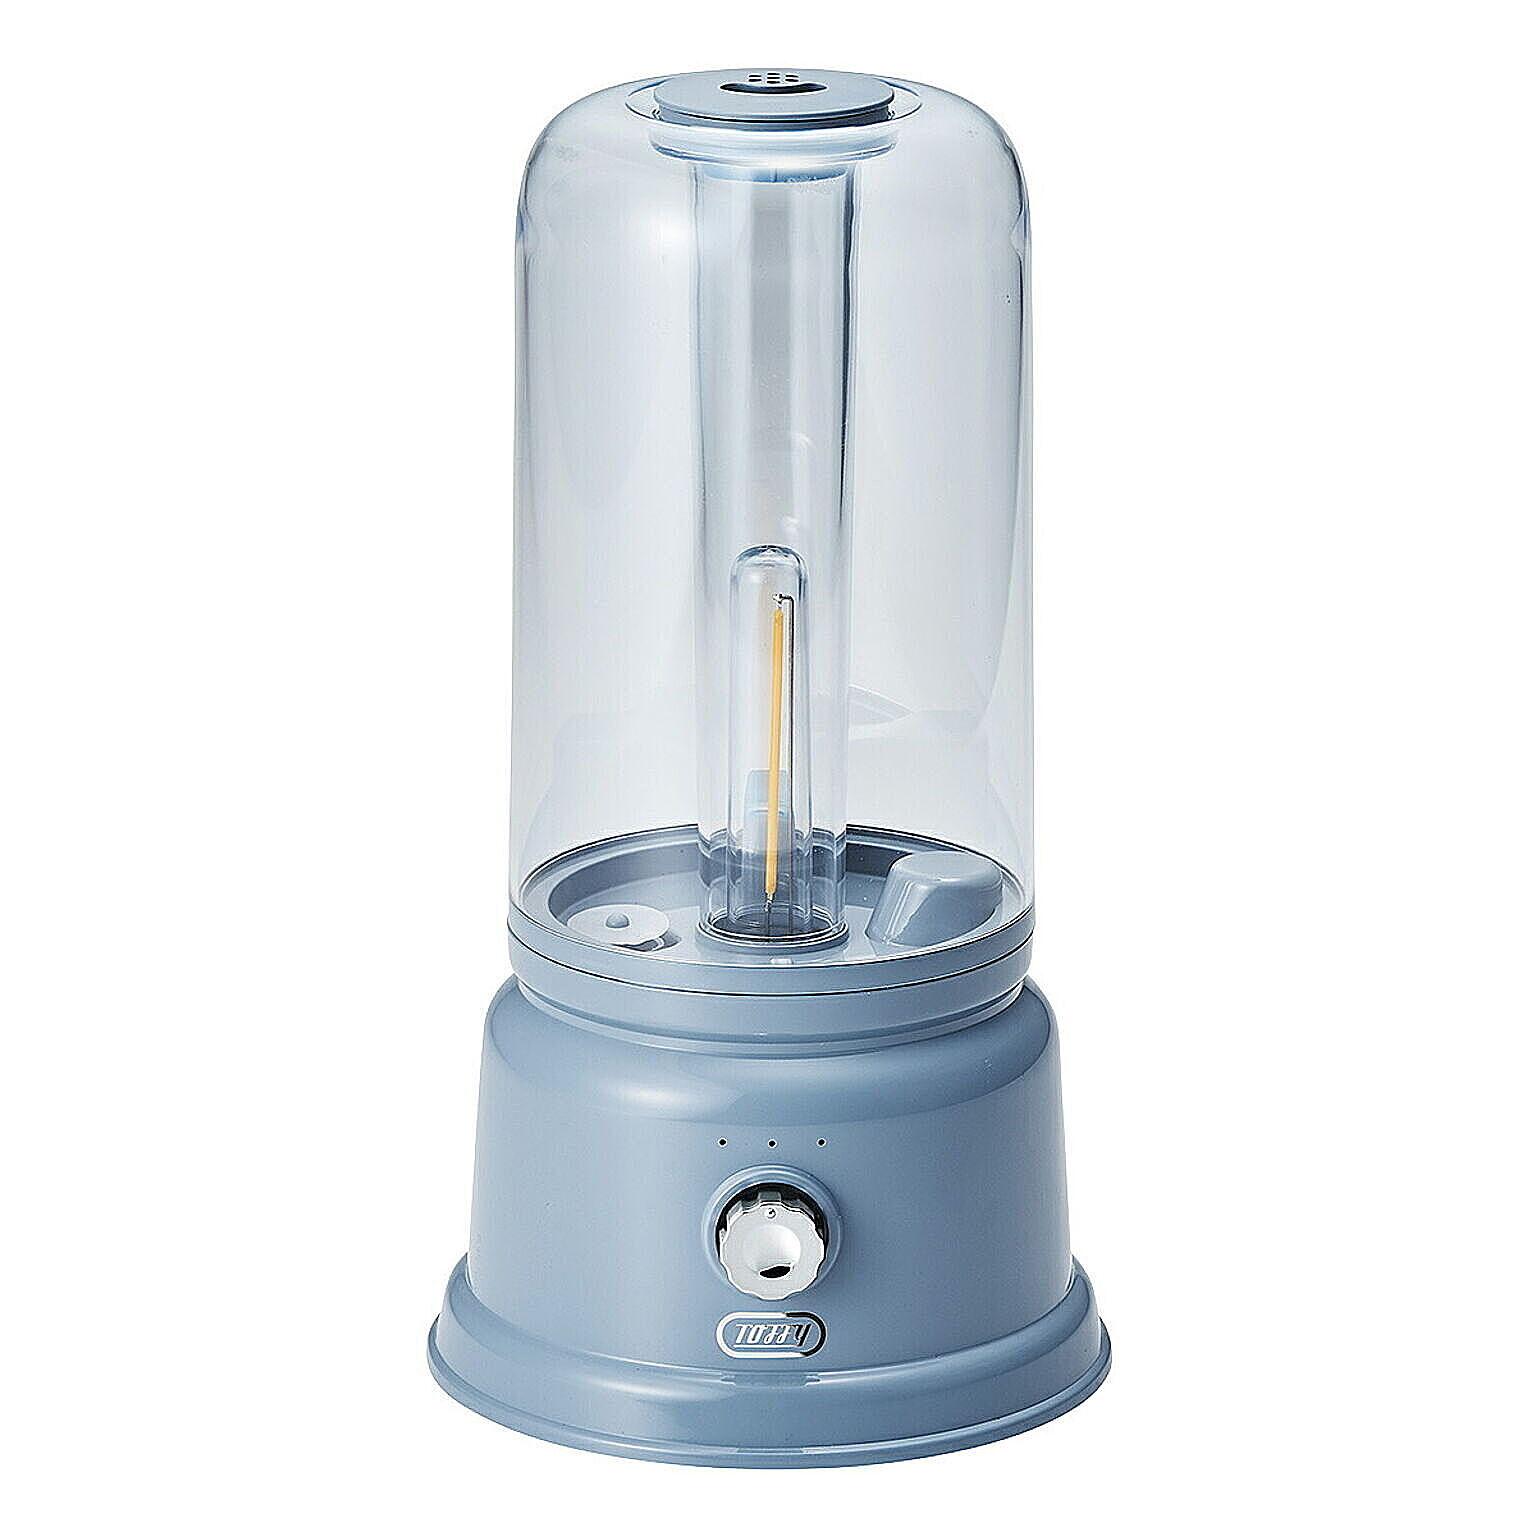 Toffy トフィー アロマランプ加湿器 加湿器 ライト ランプ 調光 スチーム おしゃれ デザイン コンパクト HF05